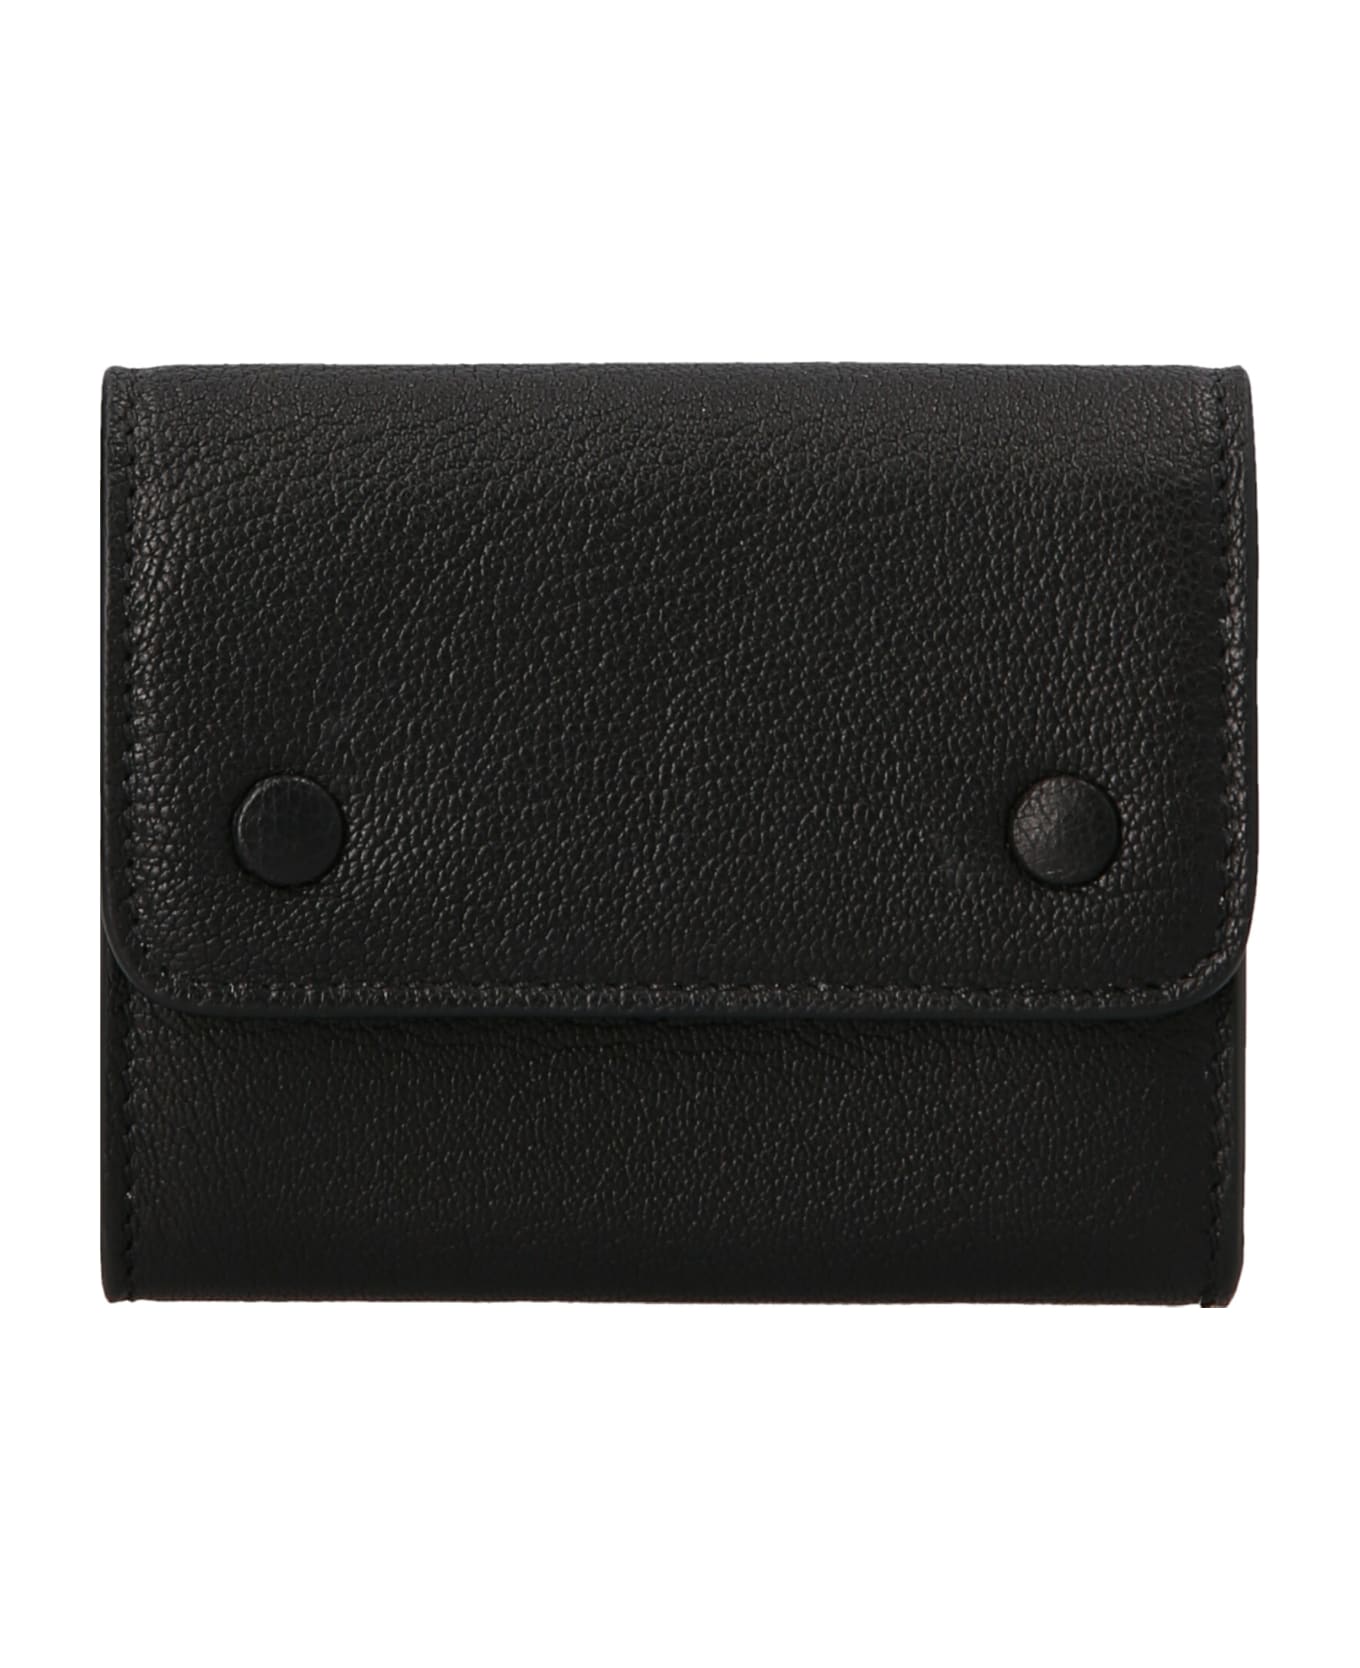 Maison Margiela 'stitching' Wallet - Black  